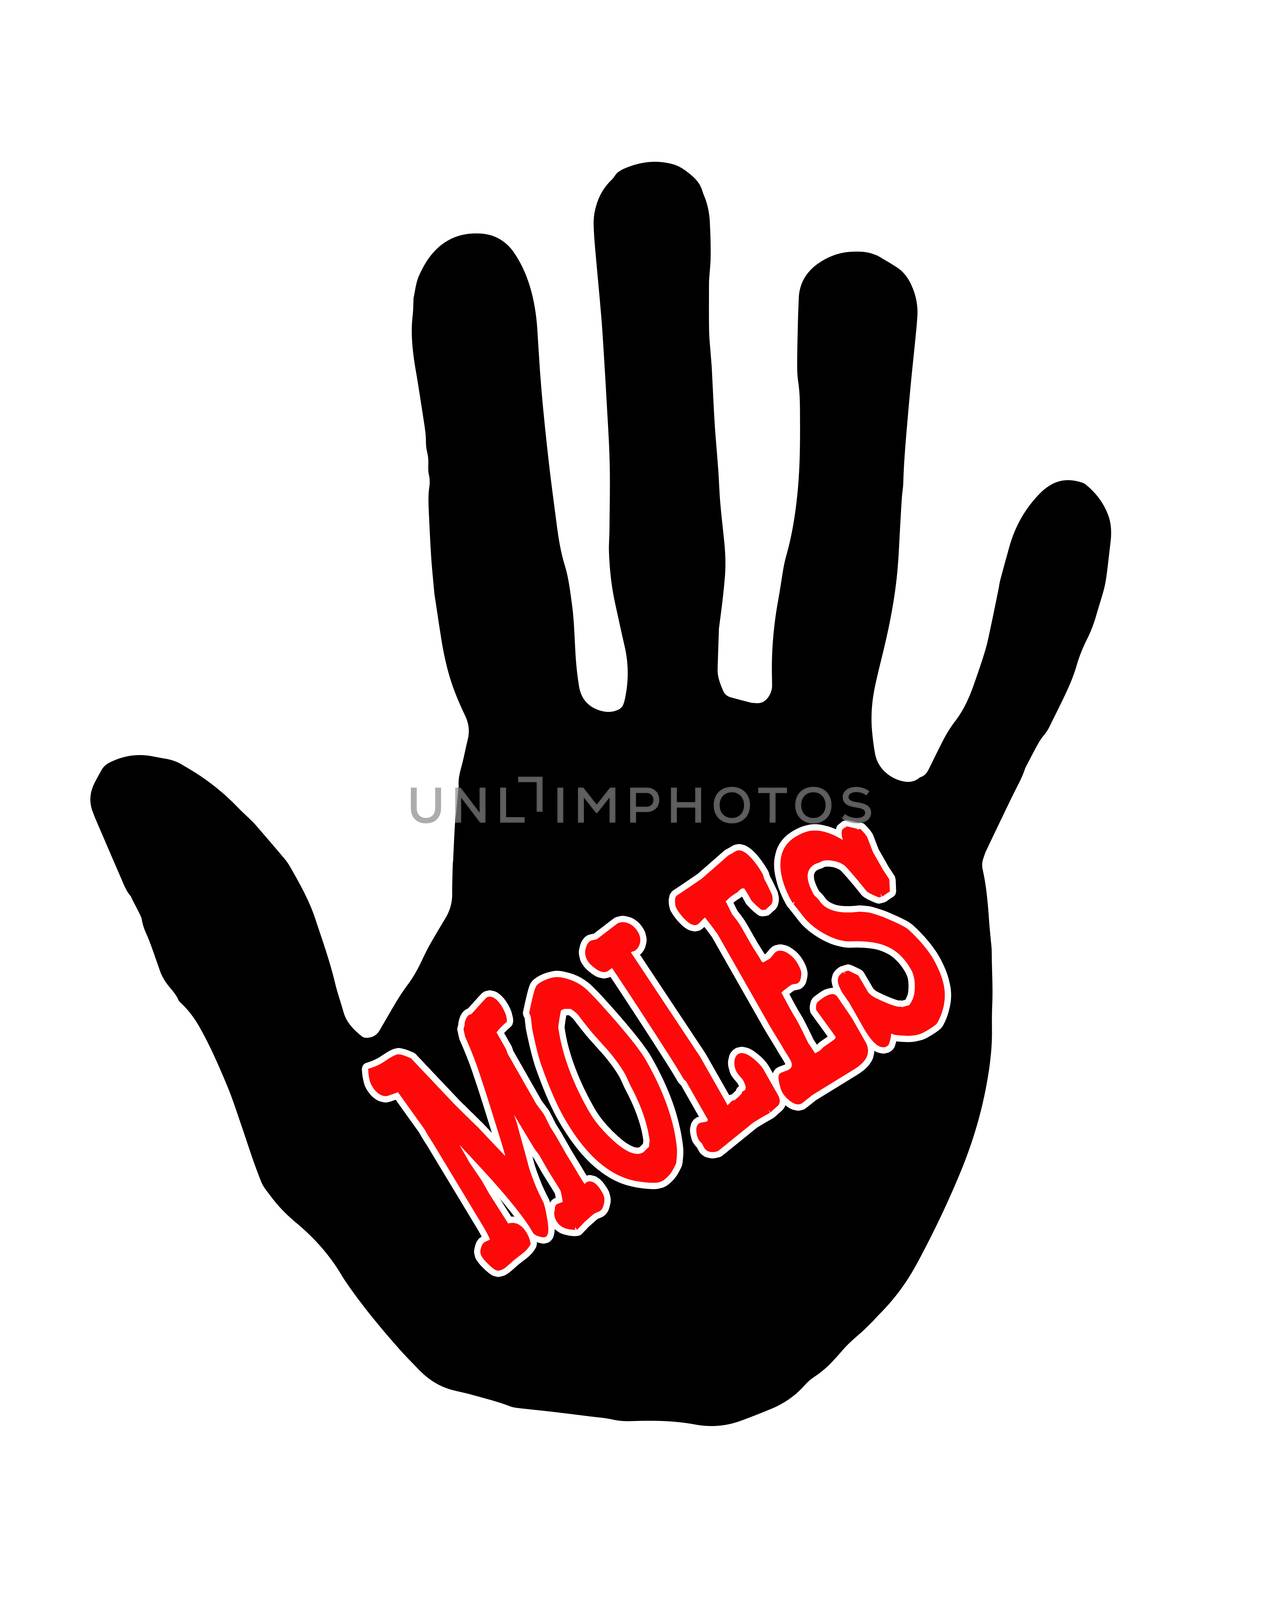 Handprint moles by Milovan